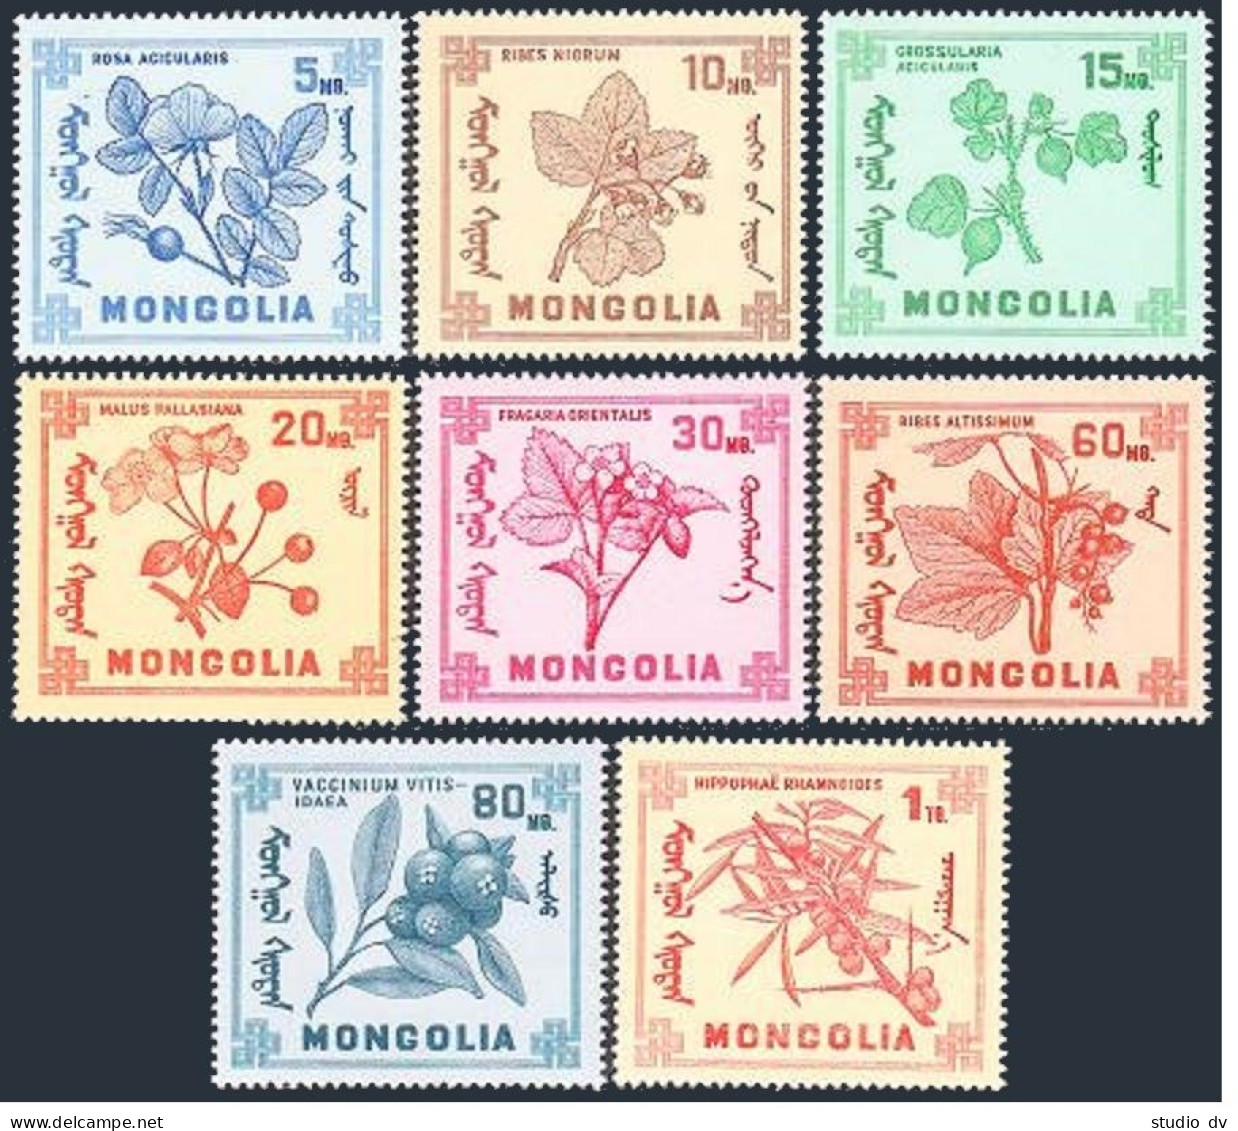 Mongolia 475-482,MNH.Michel 490-497. Berries 1968. - Mongolei